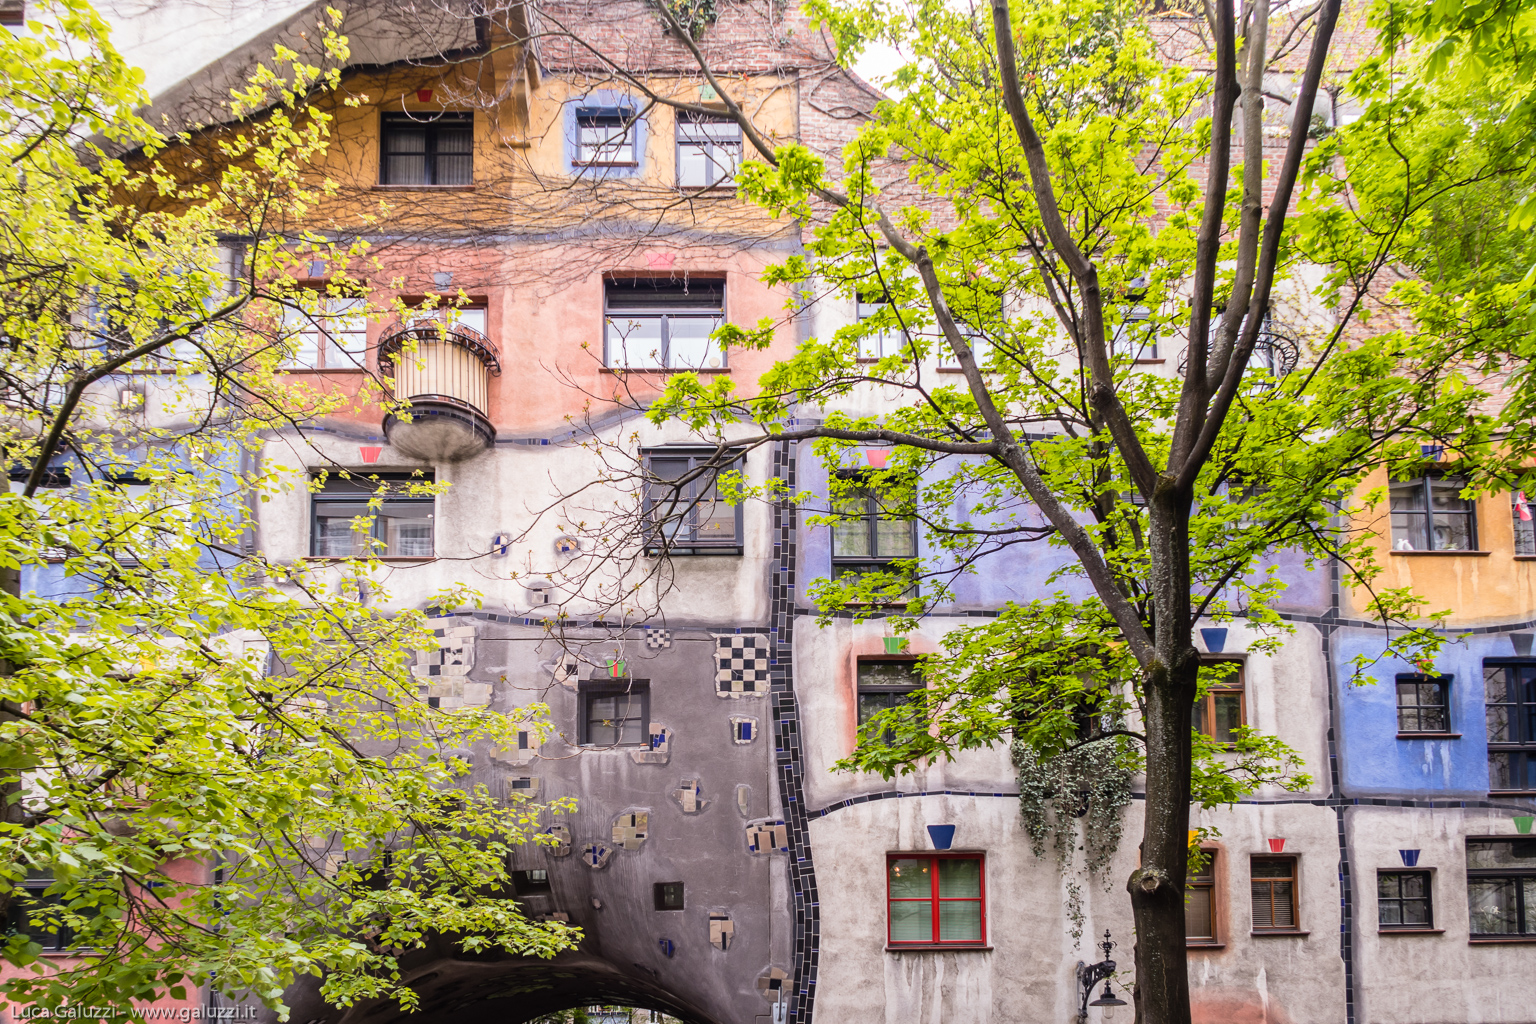 Hundertwasserhaus è un complesso di case popolari costruite nel 1986 a Vienna dall'architetto e artista Friedensreich Hundertwasser